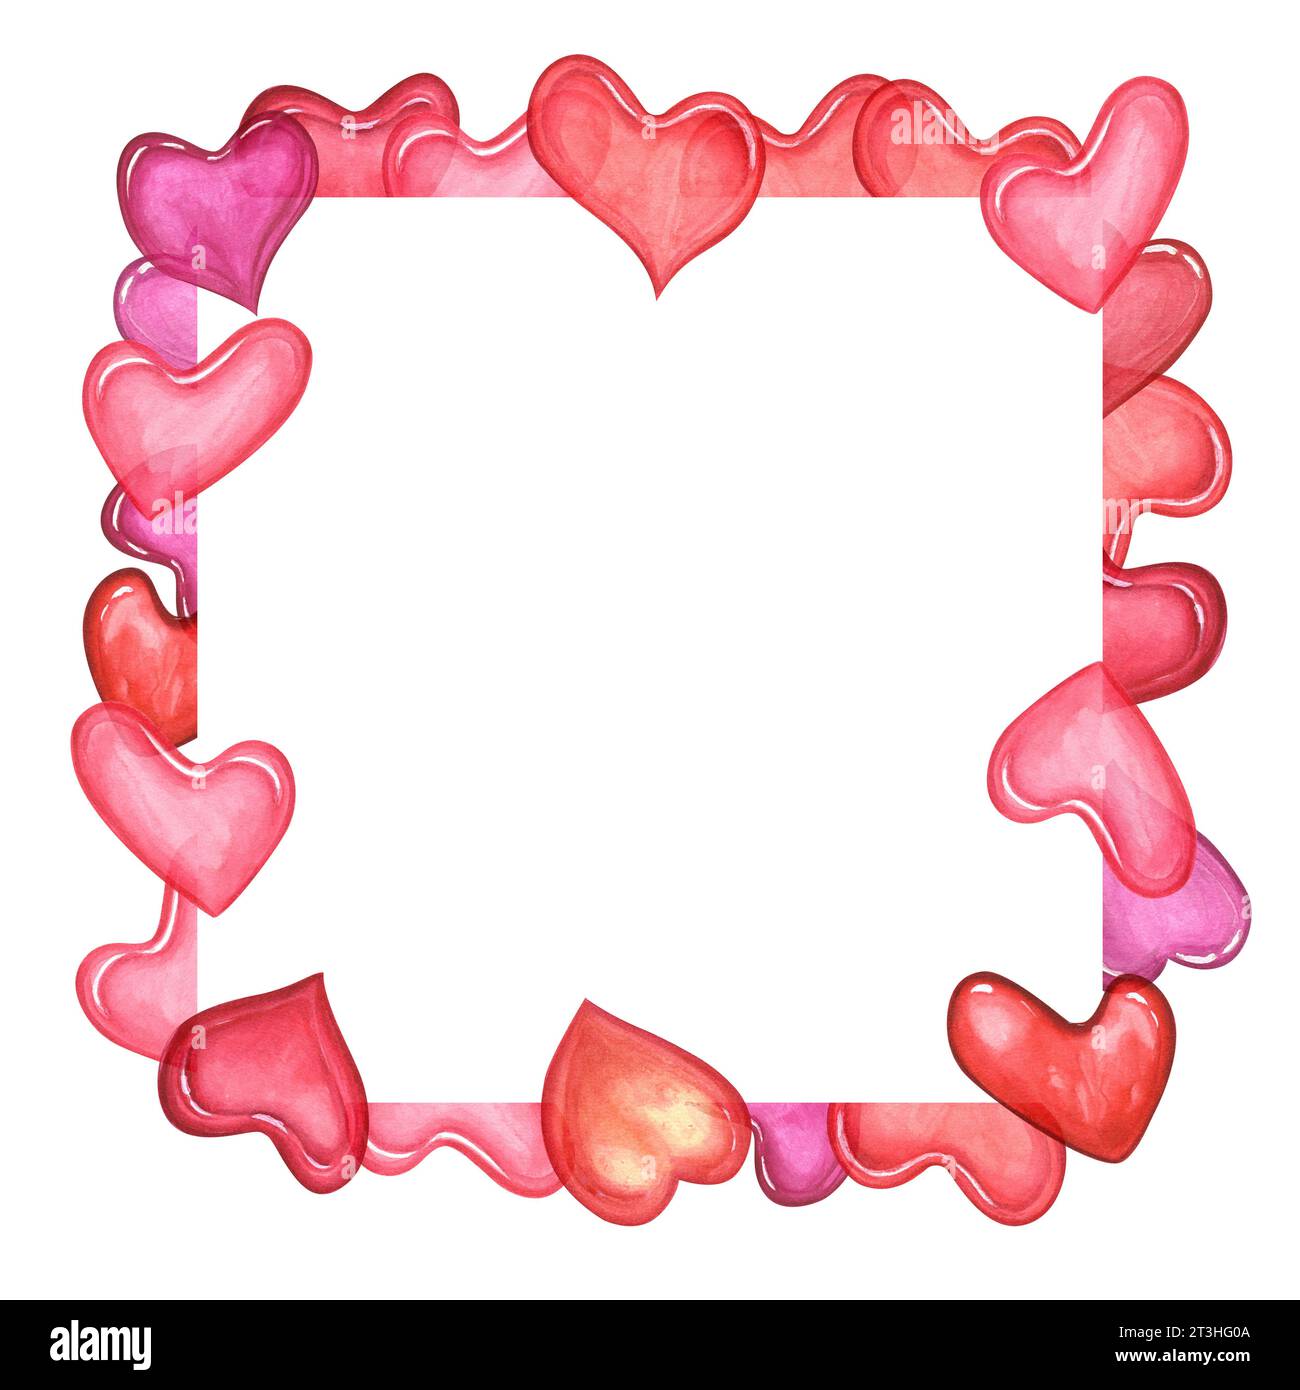 Quadratischer Rahmen aus rosa Herzen. Transparente Herzen verschiedener Formen. Aquarellillustration mit romantischem Symbol. Kopierbereich für Text. Stockfoto